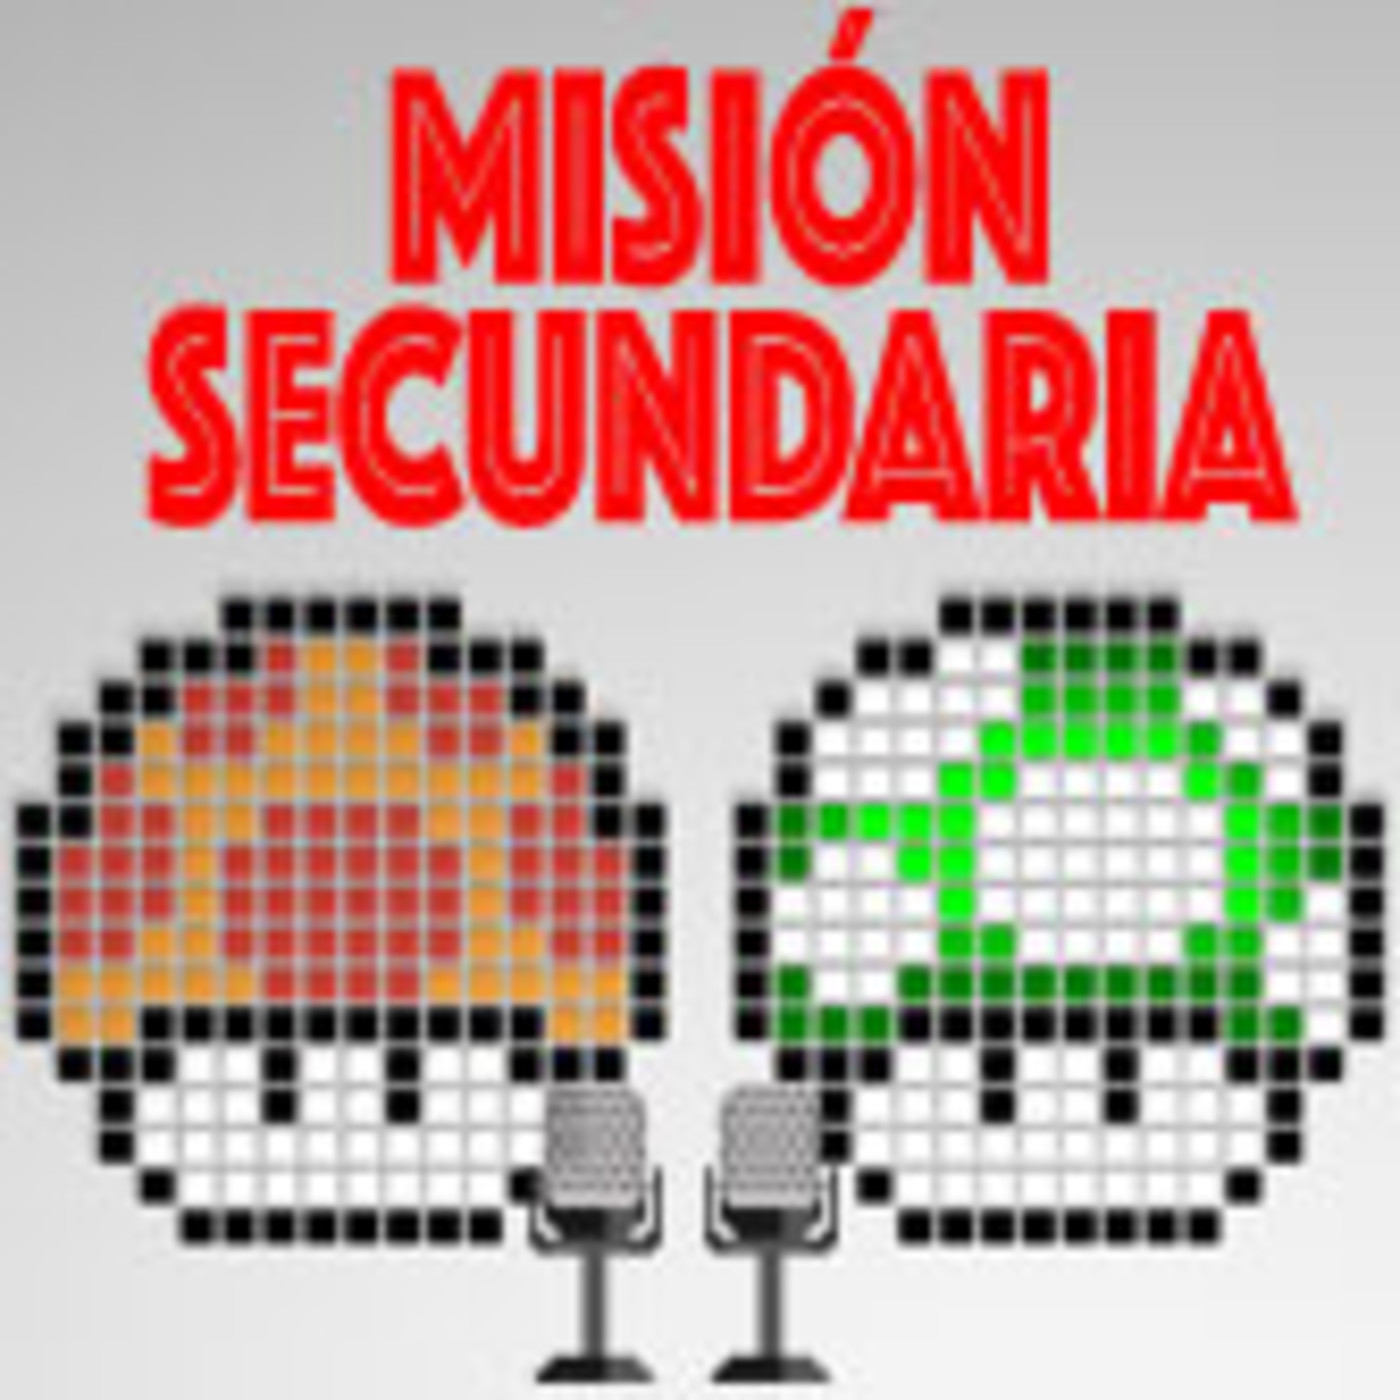 Misión Secundaria